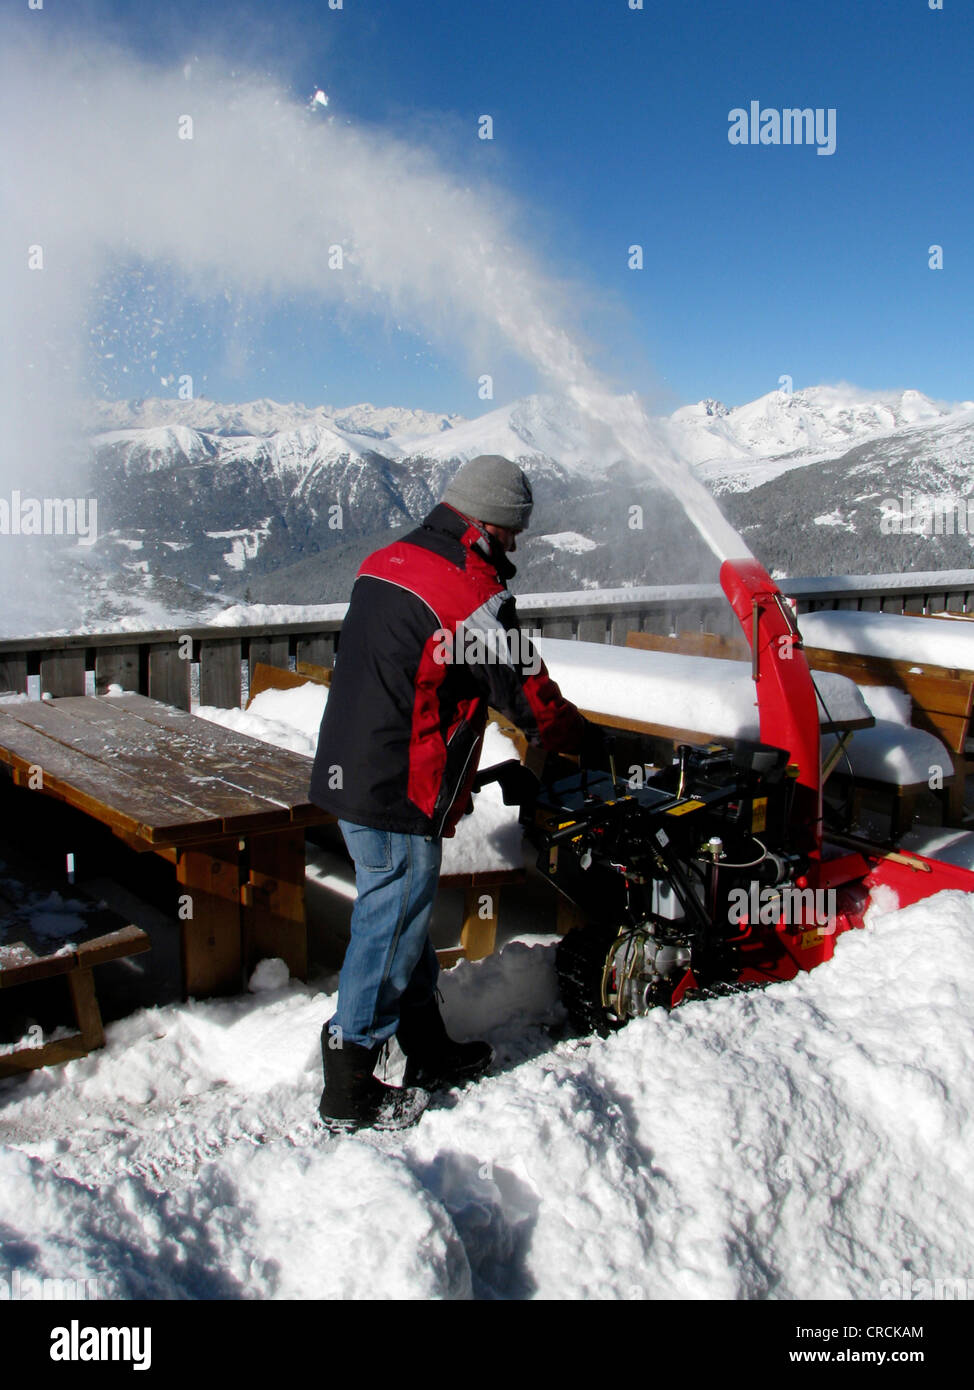 Le nettoyage de l'homme de neige fraîche avec une machine sur une terrasse d'un restaurant dans une station de ski, l'Italie, Suedtirol, Sarentino, Reinswald, Sarntal Banque D'Images